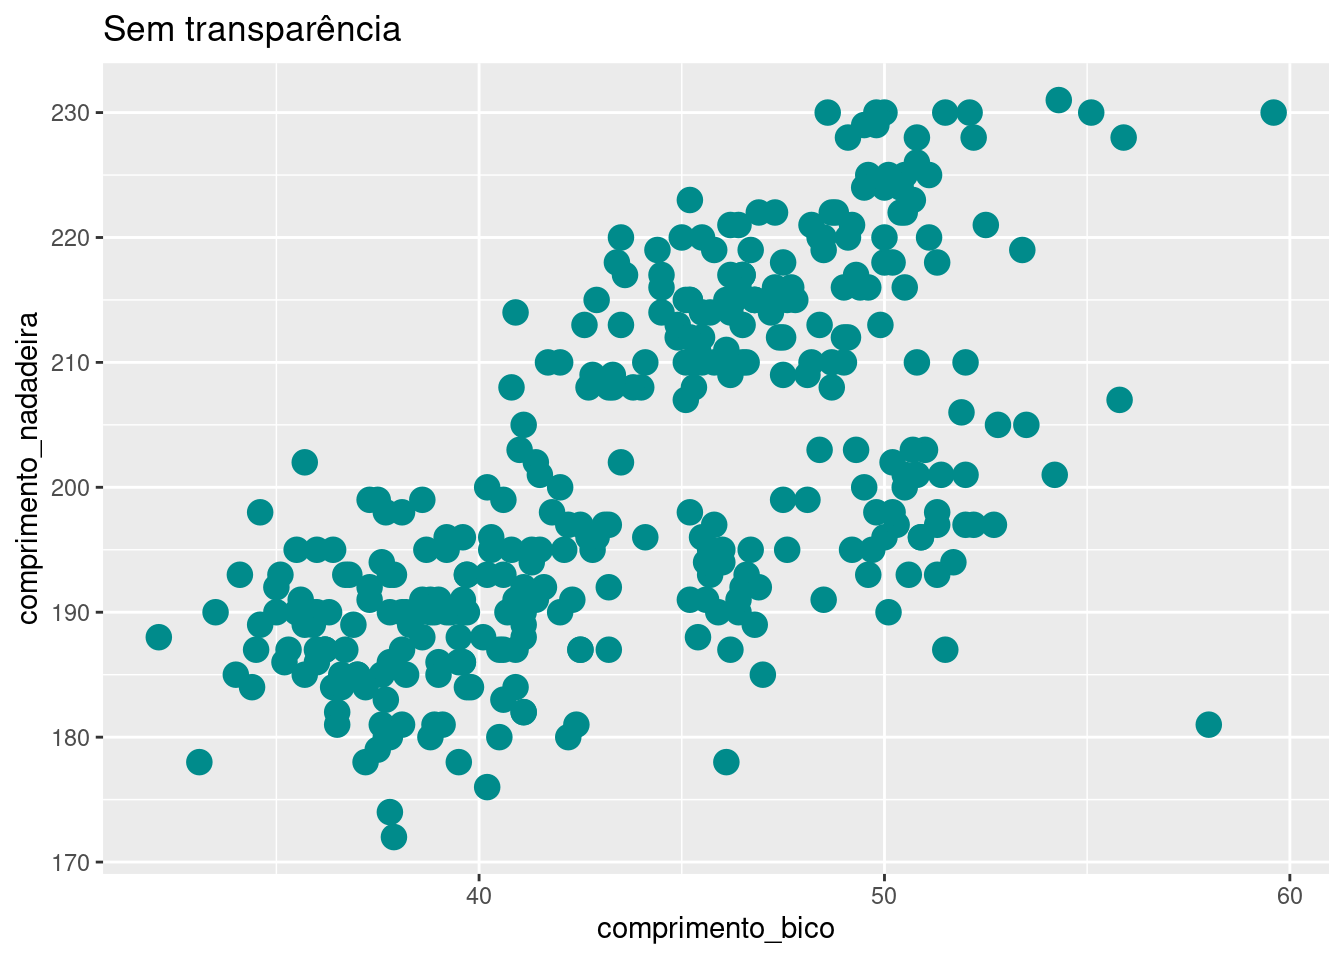 Gráfico de dispersão relacionando as variáveis `comprimento_bico` e `comprimento_nadadeira` para cada espécie de penguim, com alterações na cor, tamanho e preenchimento dos pontos.